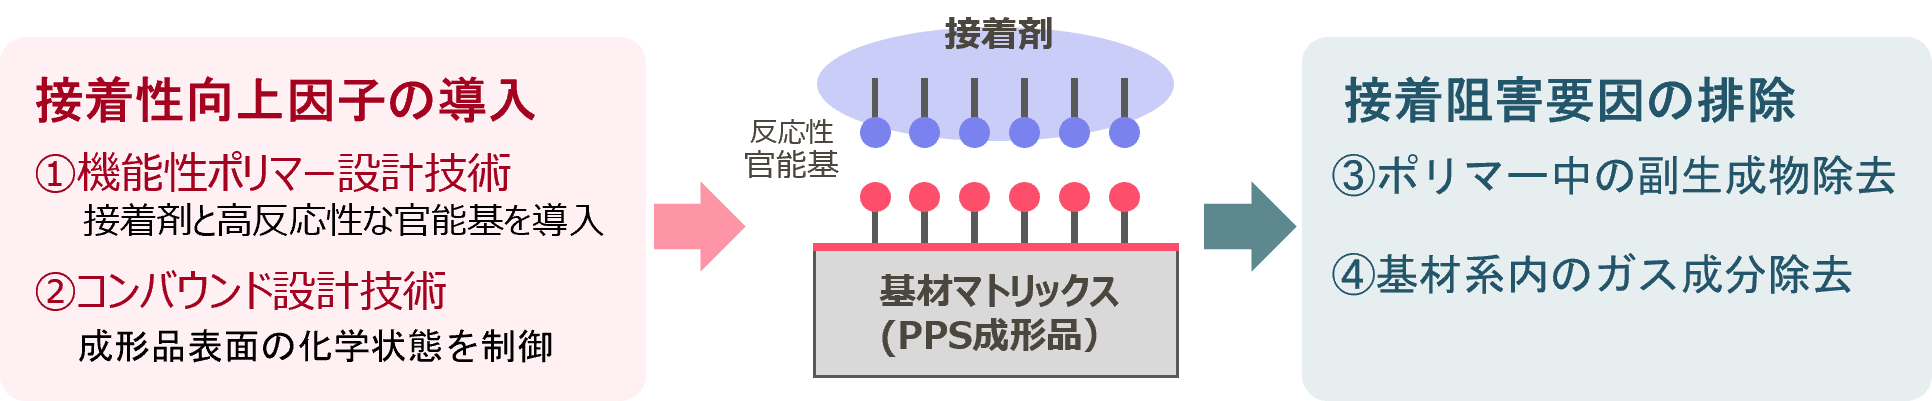 PPSの接着力強化ソリューション